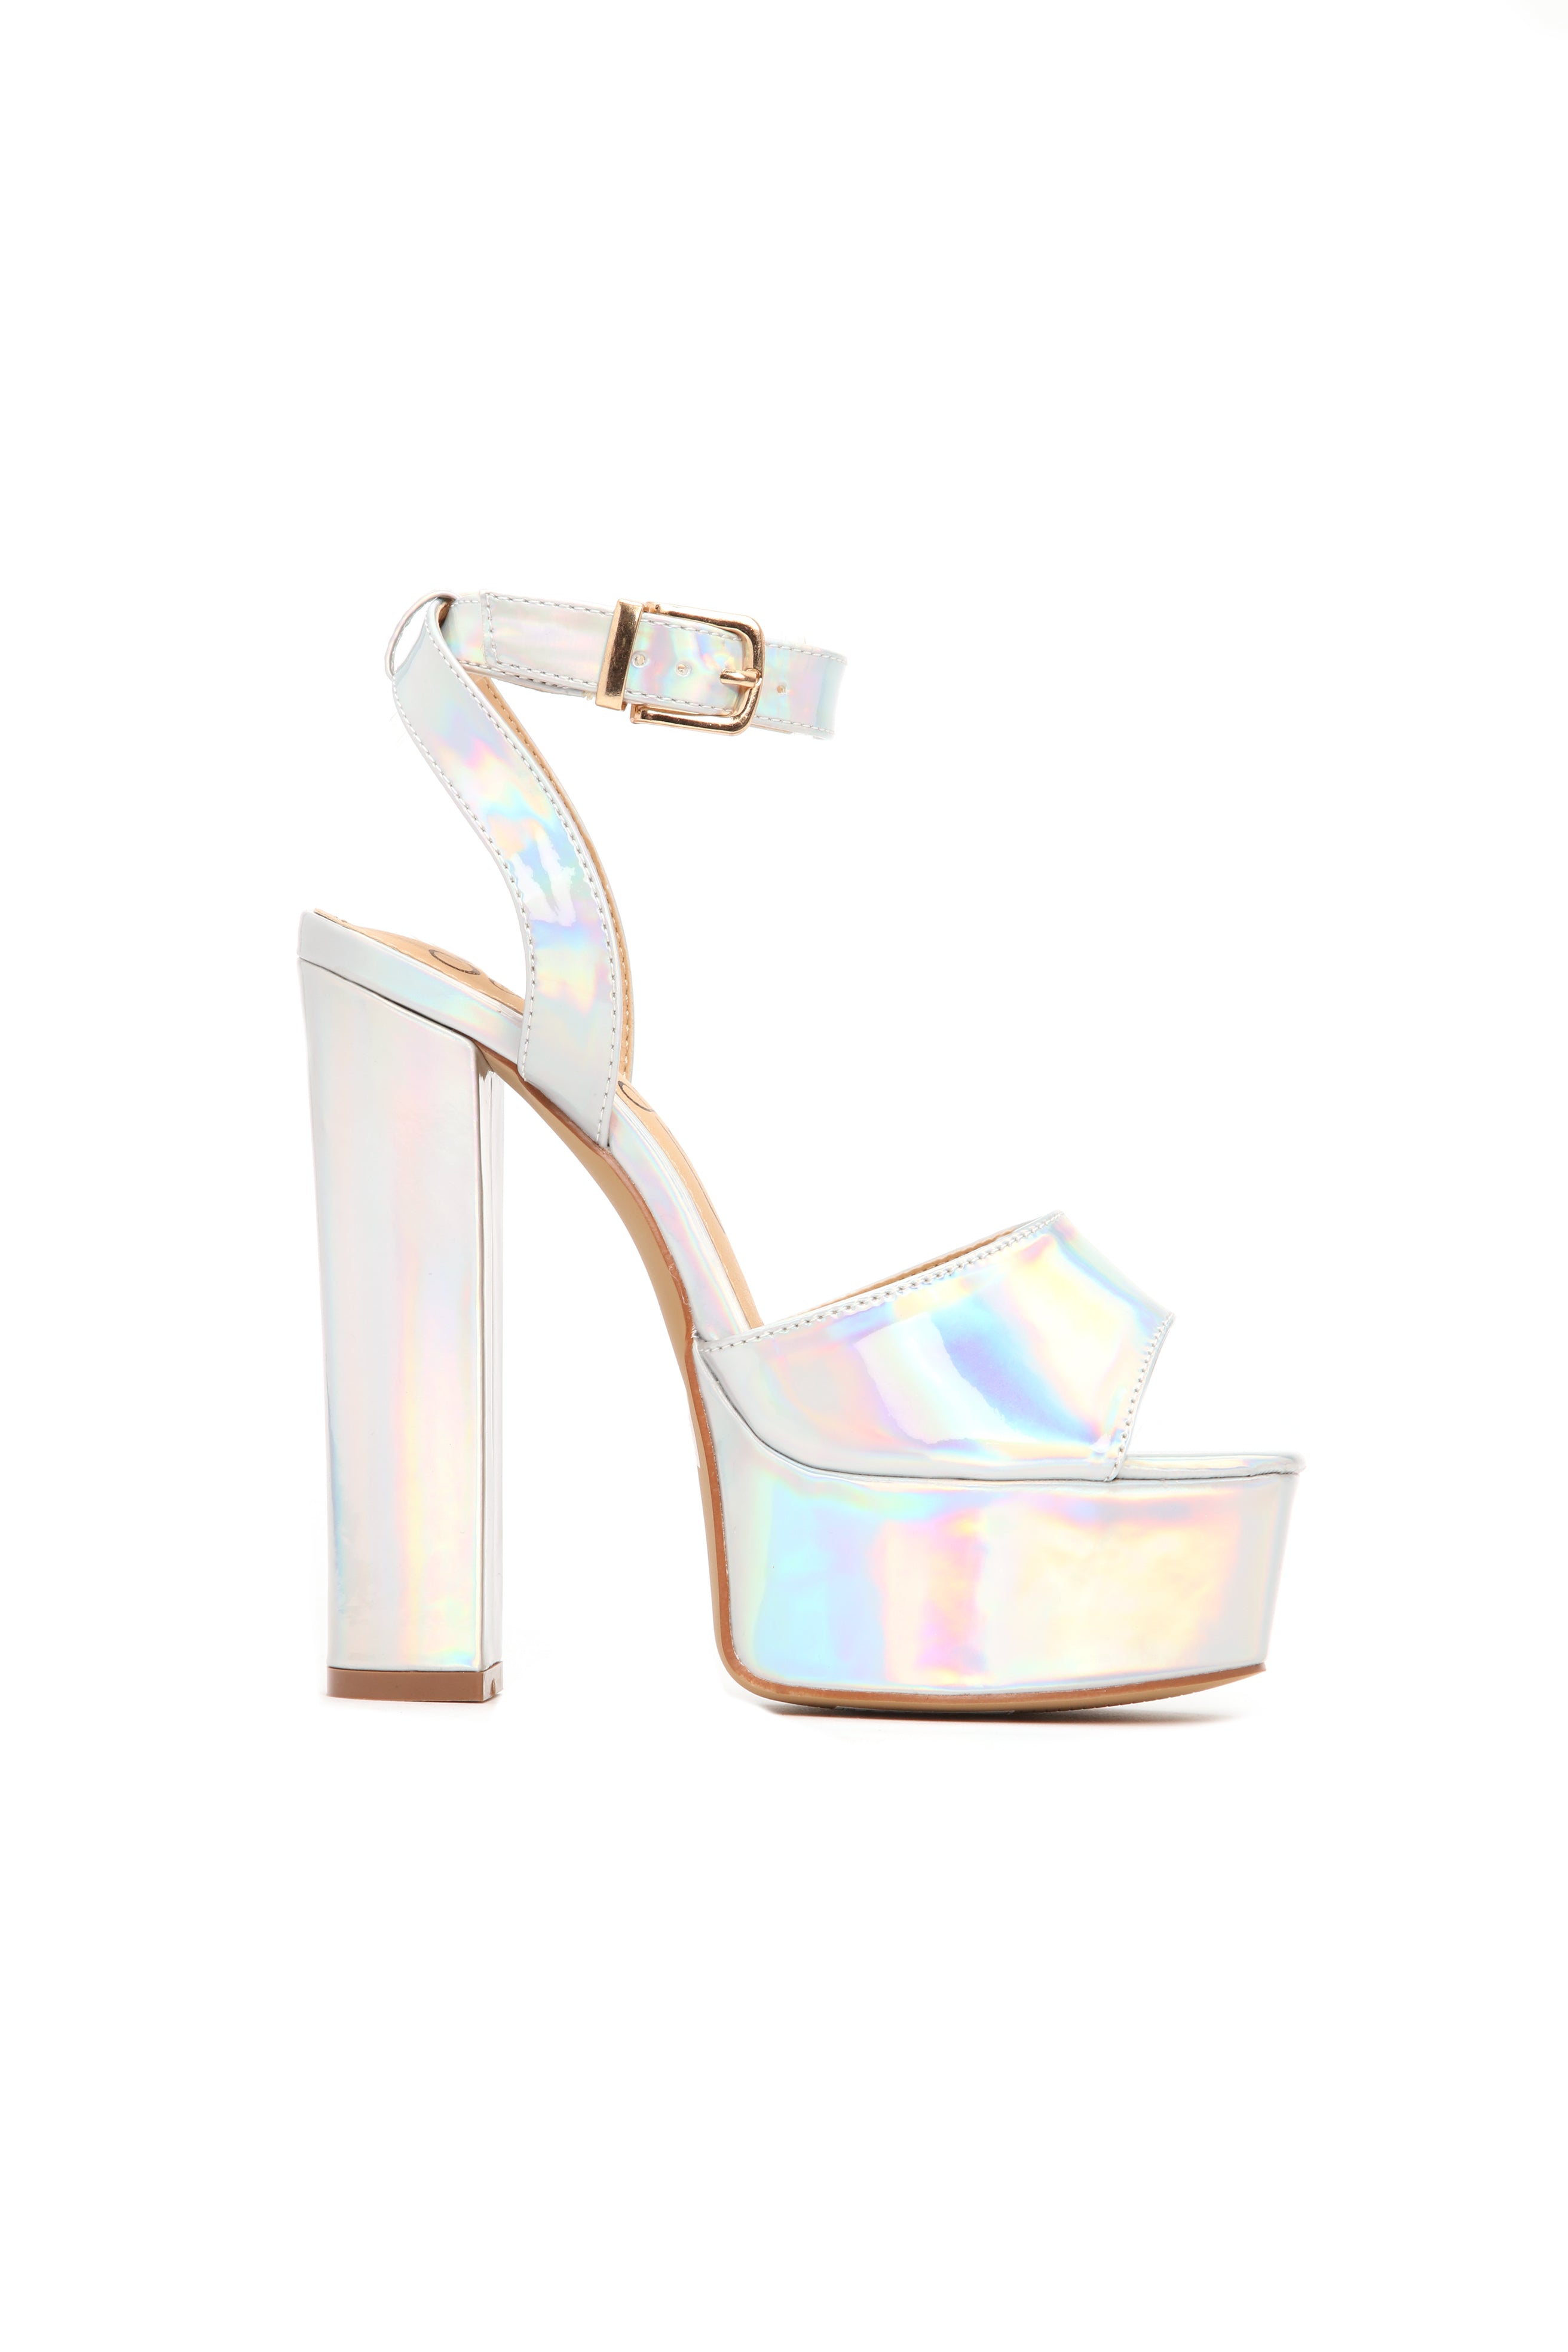 silver iridescent heels